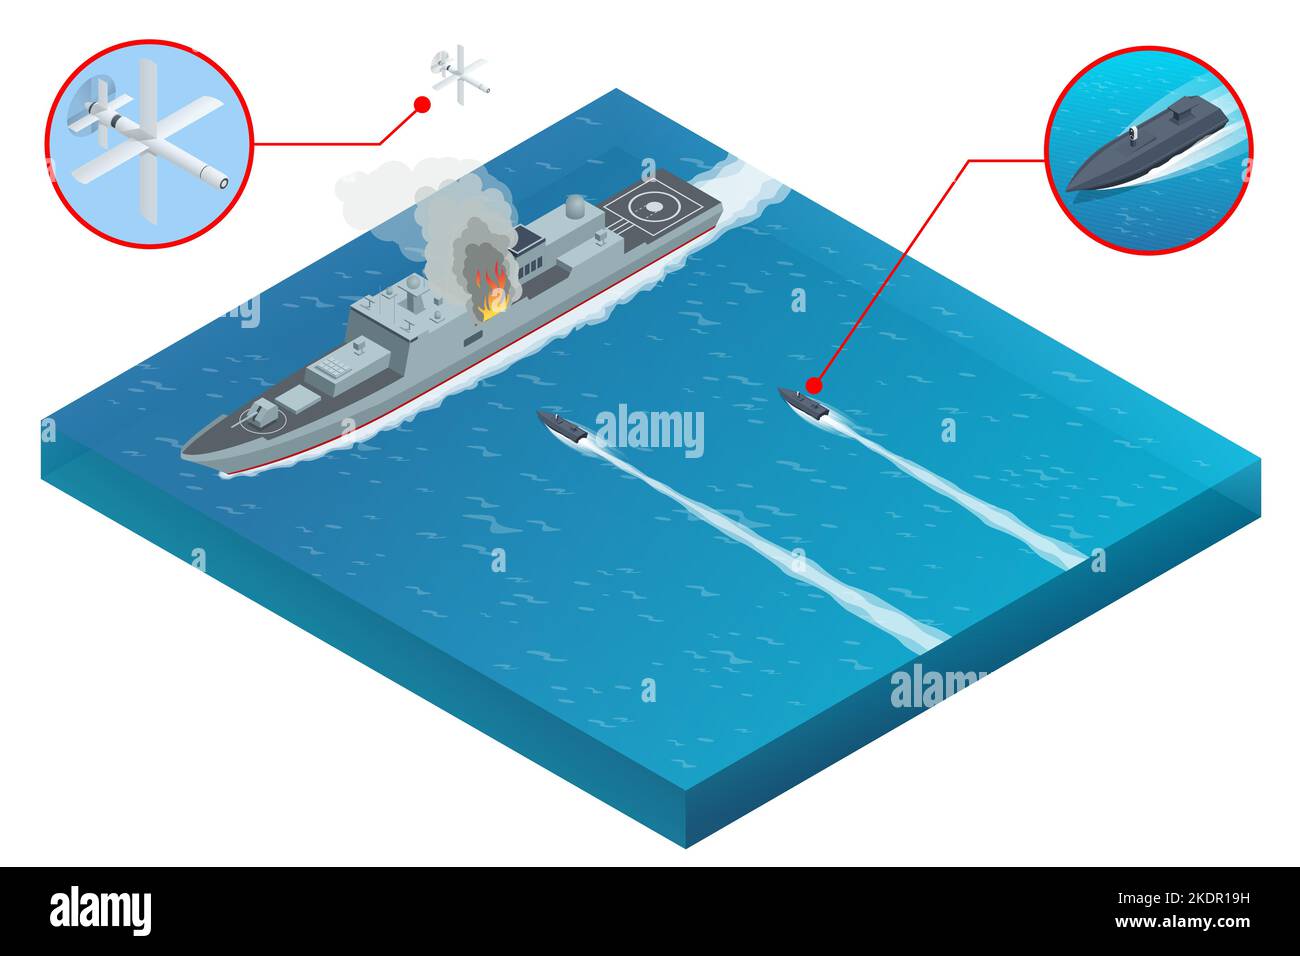 Attacco isometrico di una nave militare da guerra con droni aerei e droni militari di superficie marittima. I droni militari possono essere controllati sia manualmente Illustrazione Vettoriale